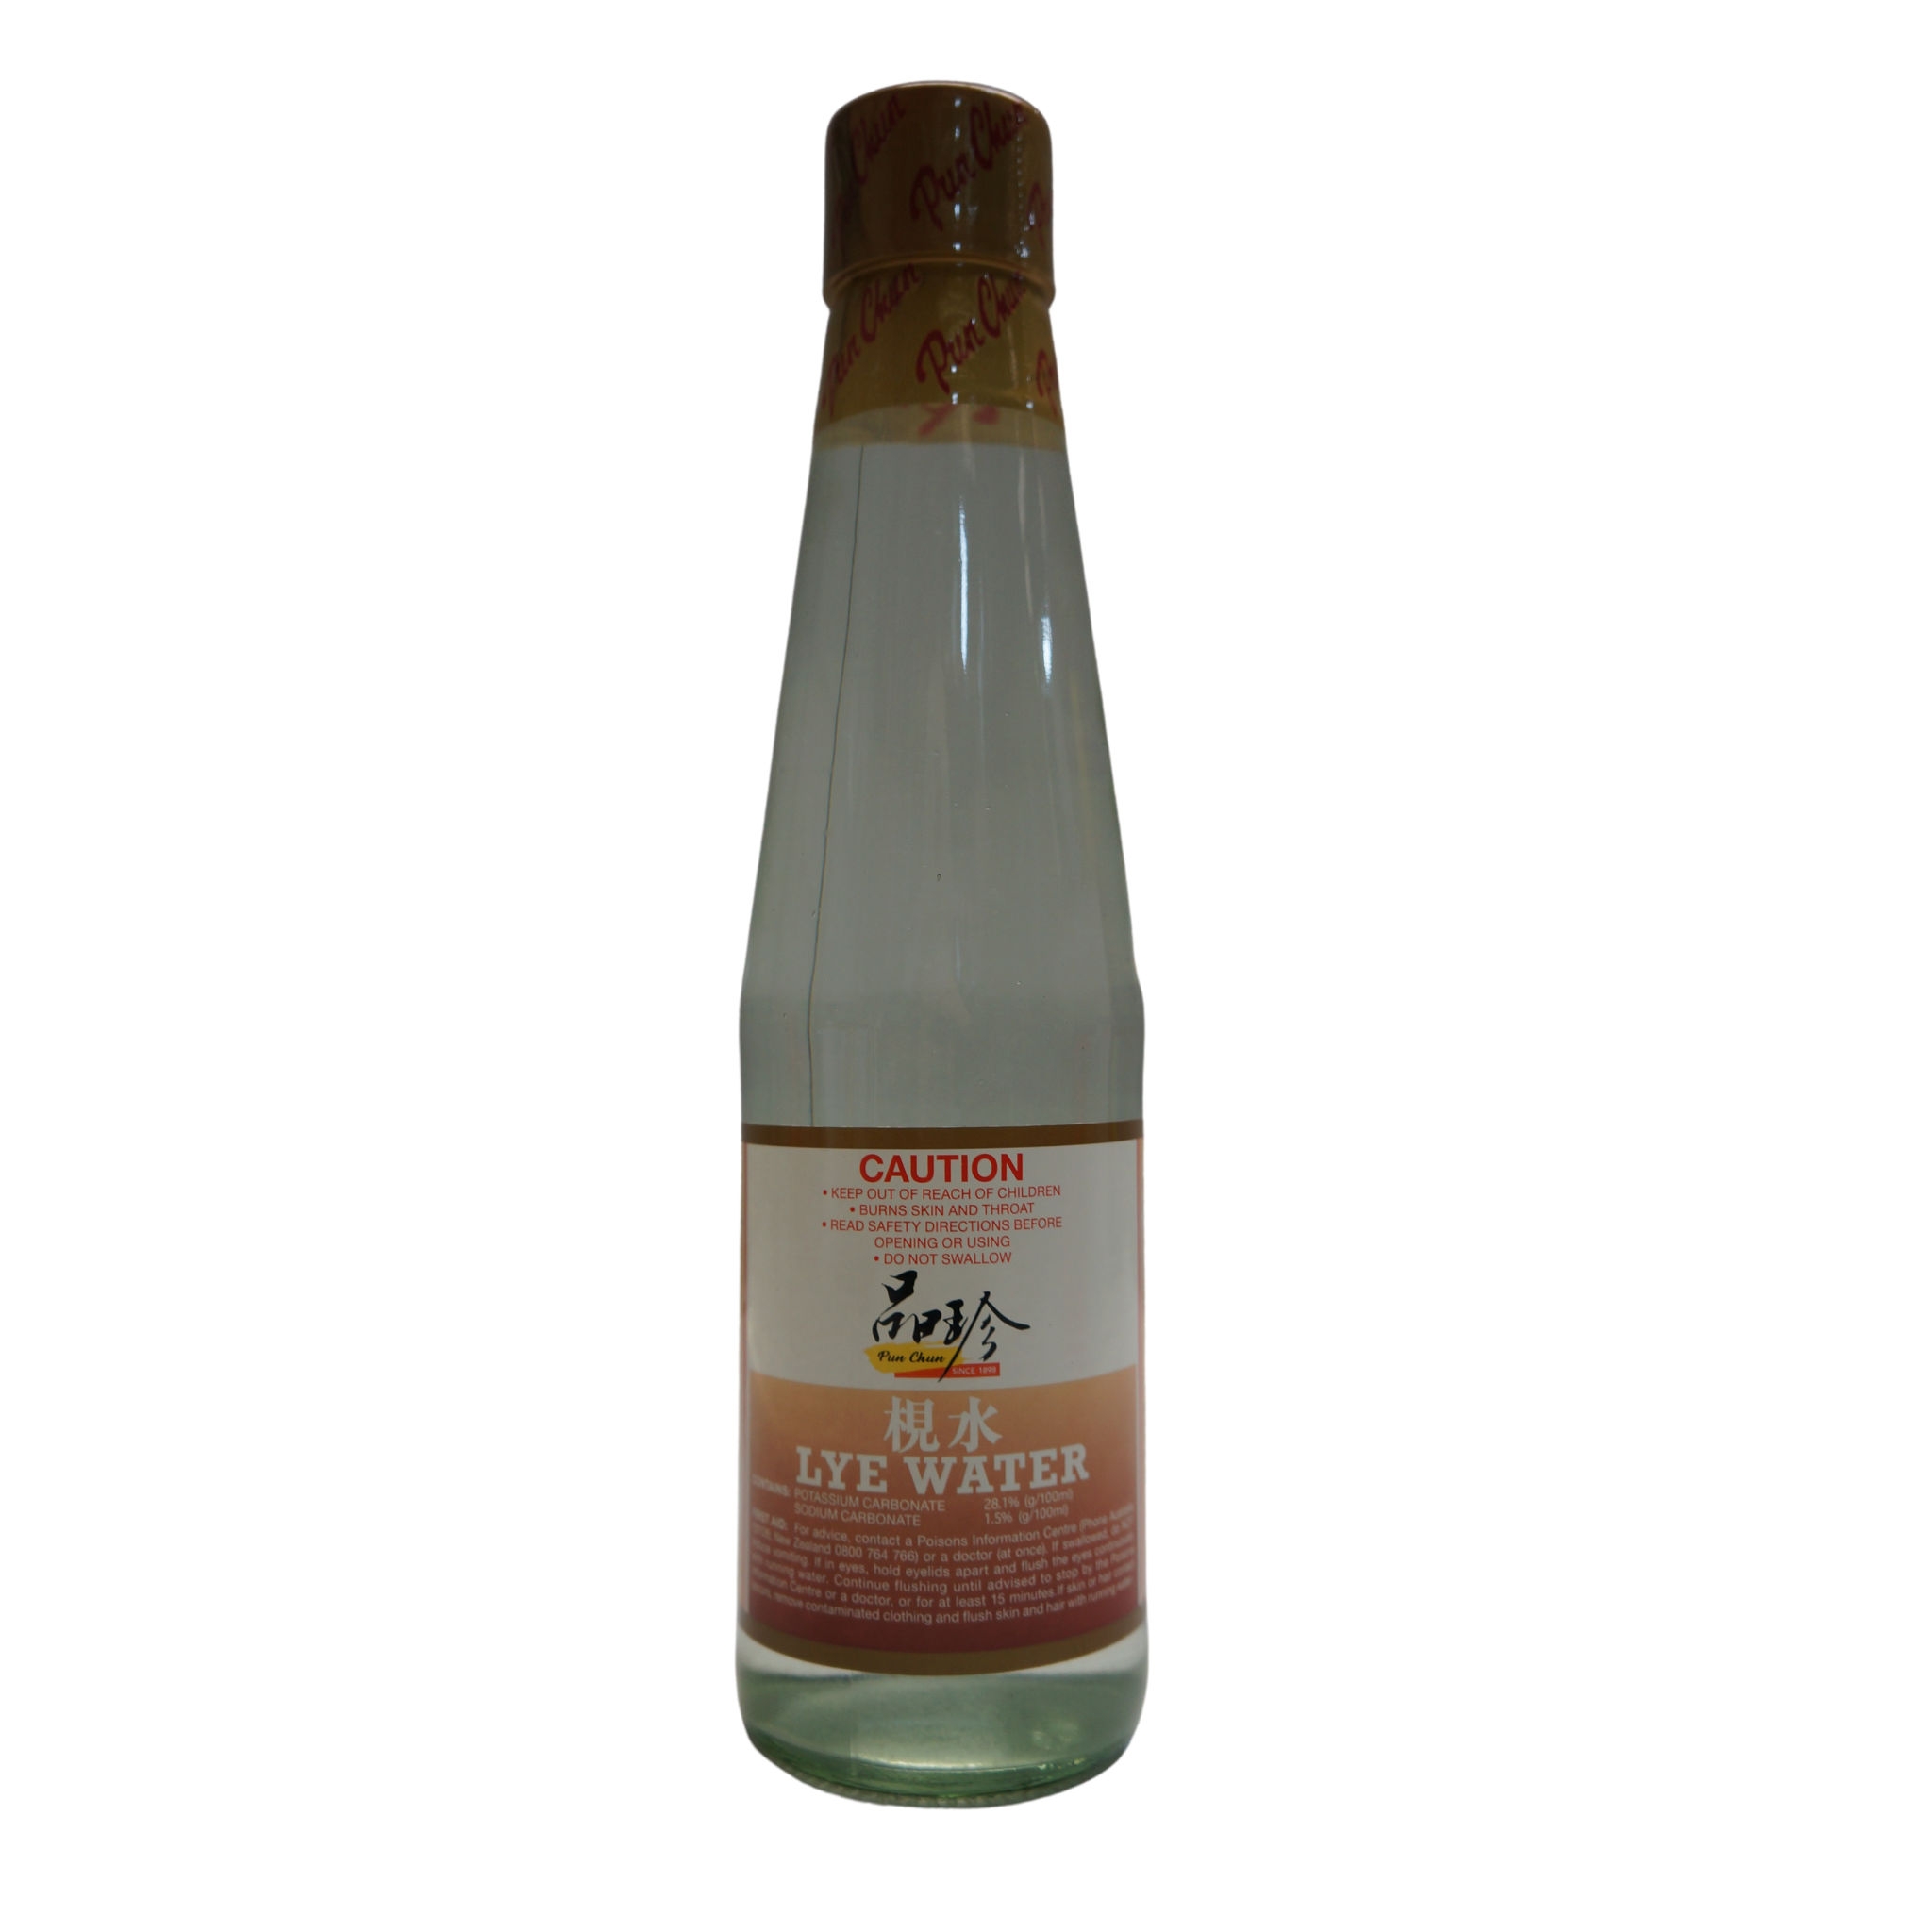 Lye Water 500ml - MEE CHUN - Chinese Sauces & Seasonings - Chinese